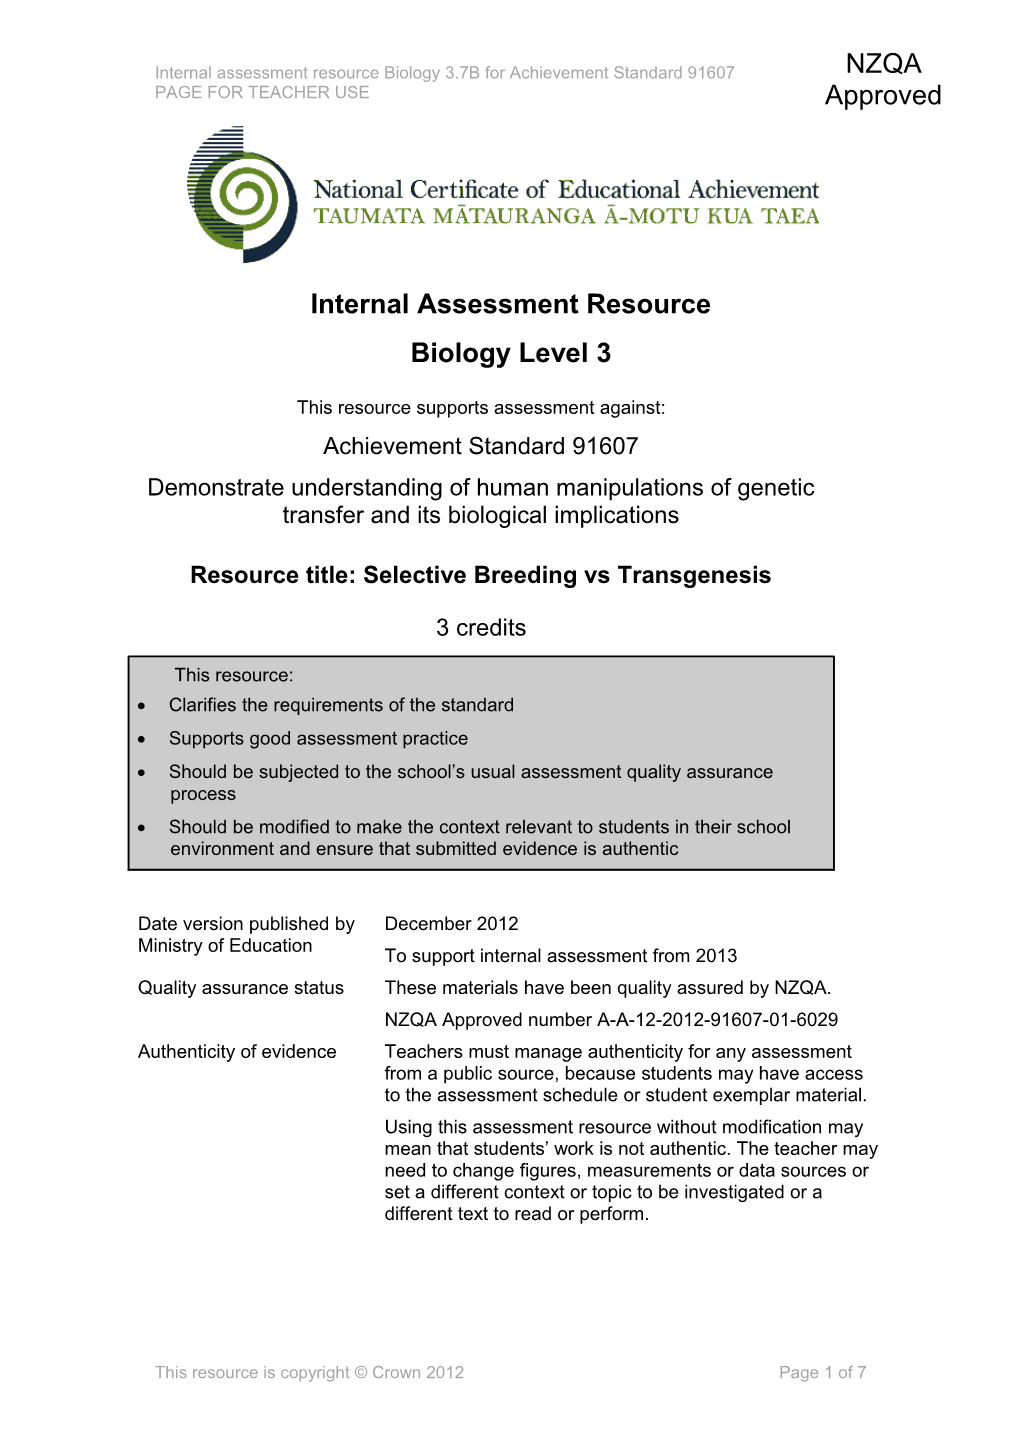 Level 3 Biology Internal Assessment Resource